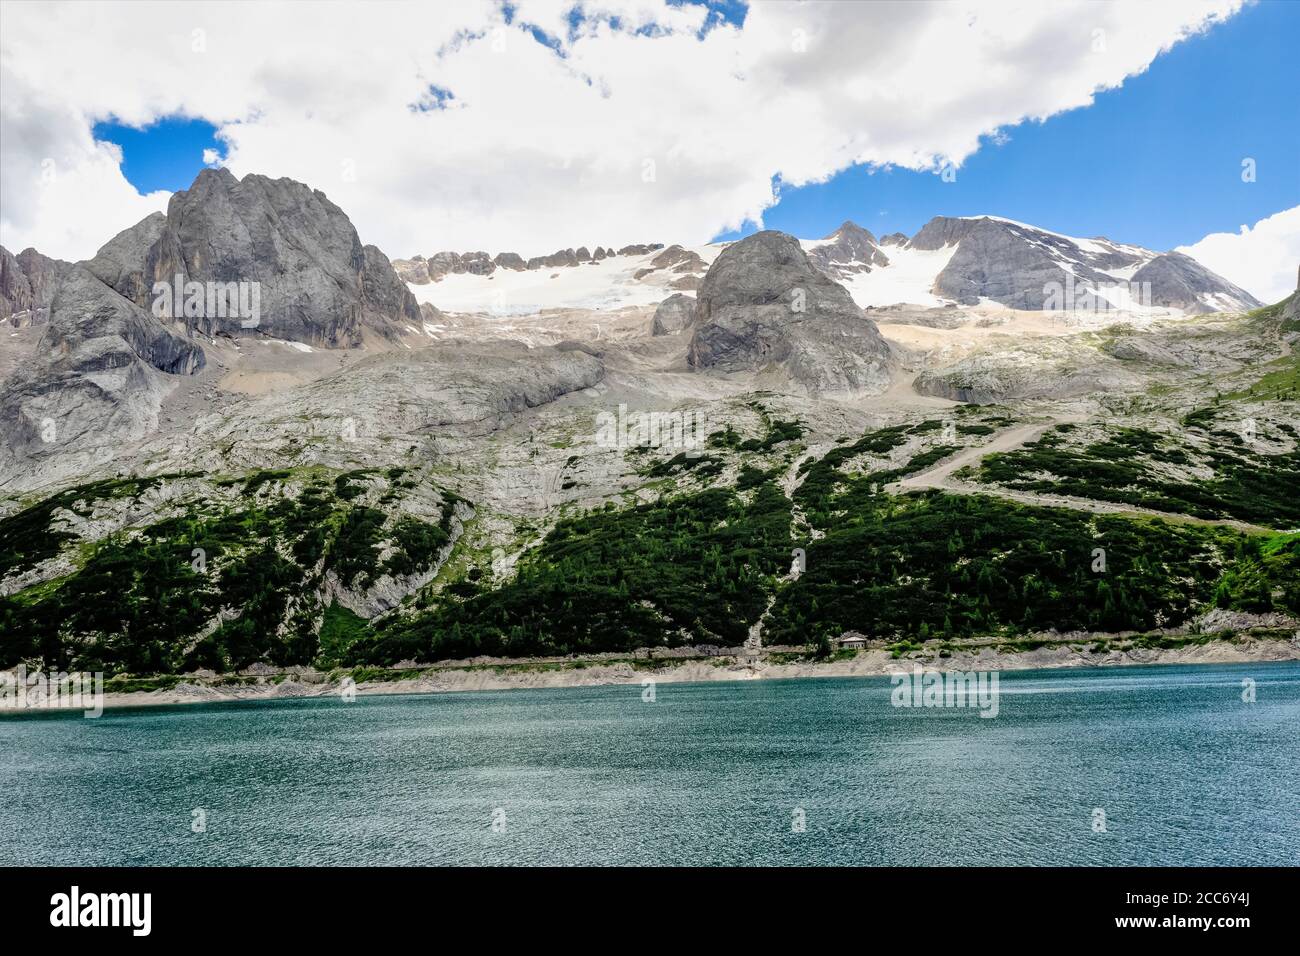 Alpine landscape in the Dolomites, Italy. Glacier Marmolada and Lago di Fedaia. Stock Photo